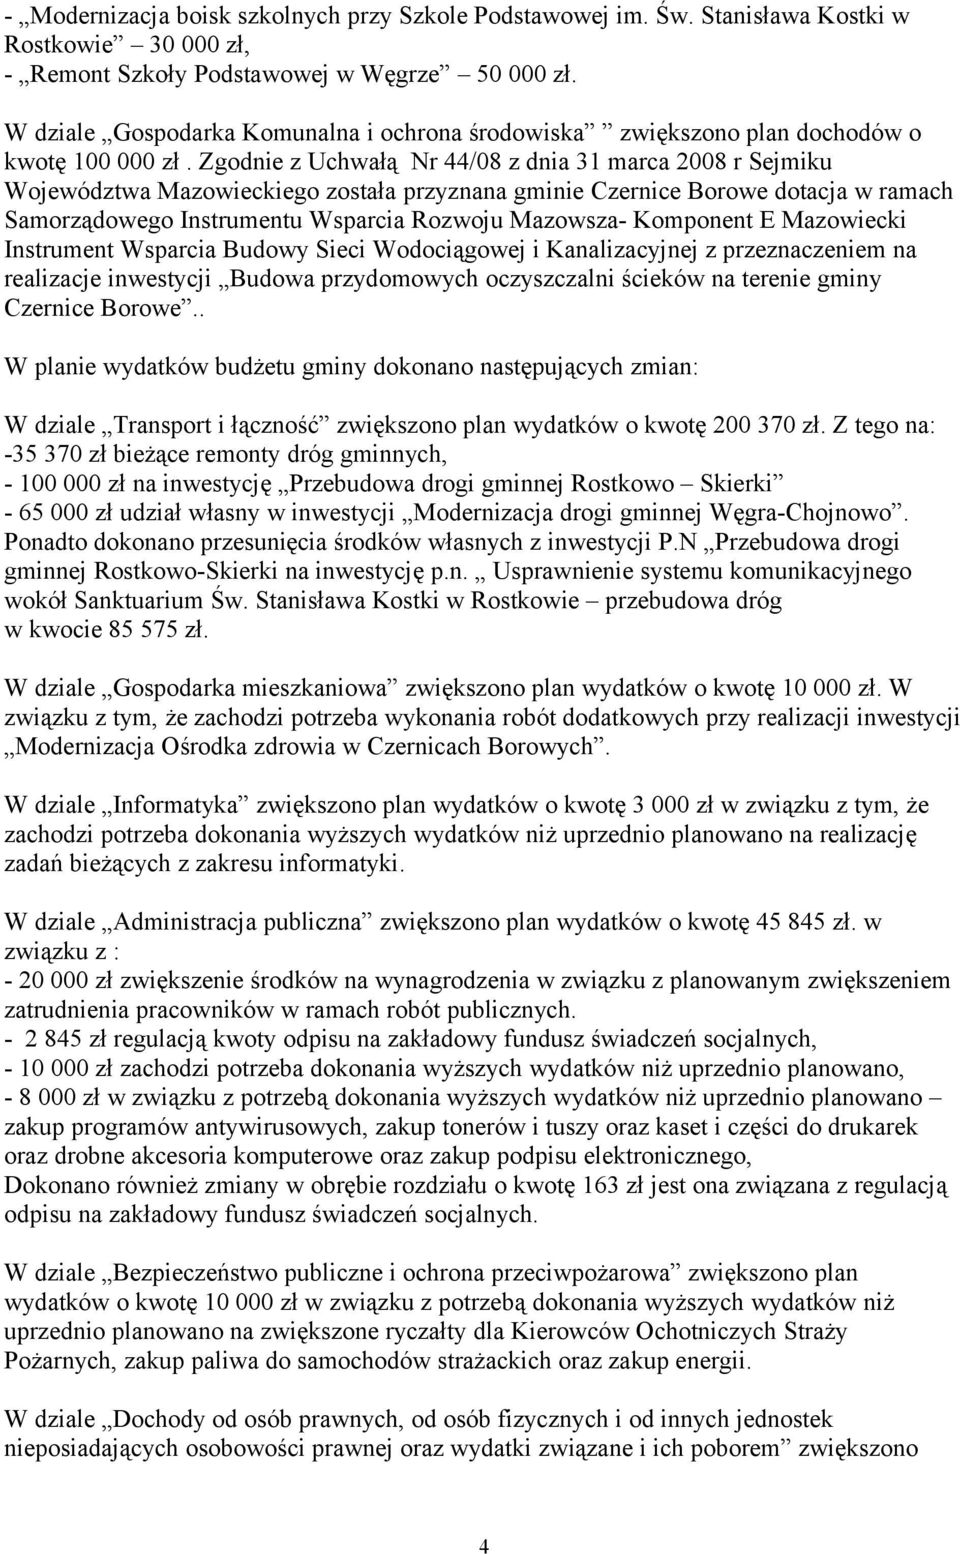 Zgodnie z Uchwałą Nr 44/08 z dnia 31 marca 2008 r Sejmiku Województwa Mazowieckiego została przyznana gminie Czernice Borowe dotacja w ramach Samorządowego Instrumentu Wsparcia Rozwoju Mazowsza-